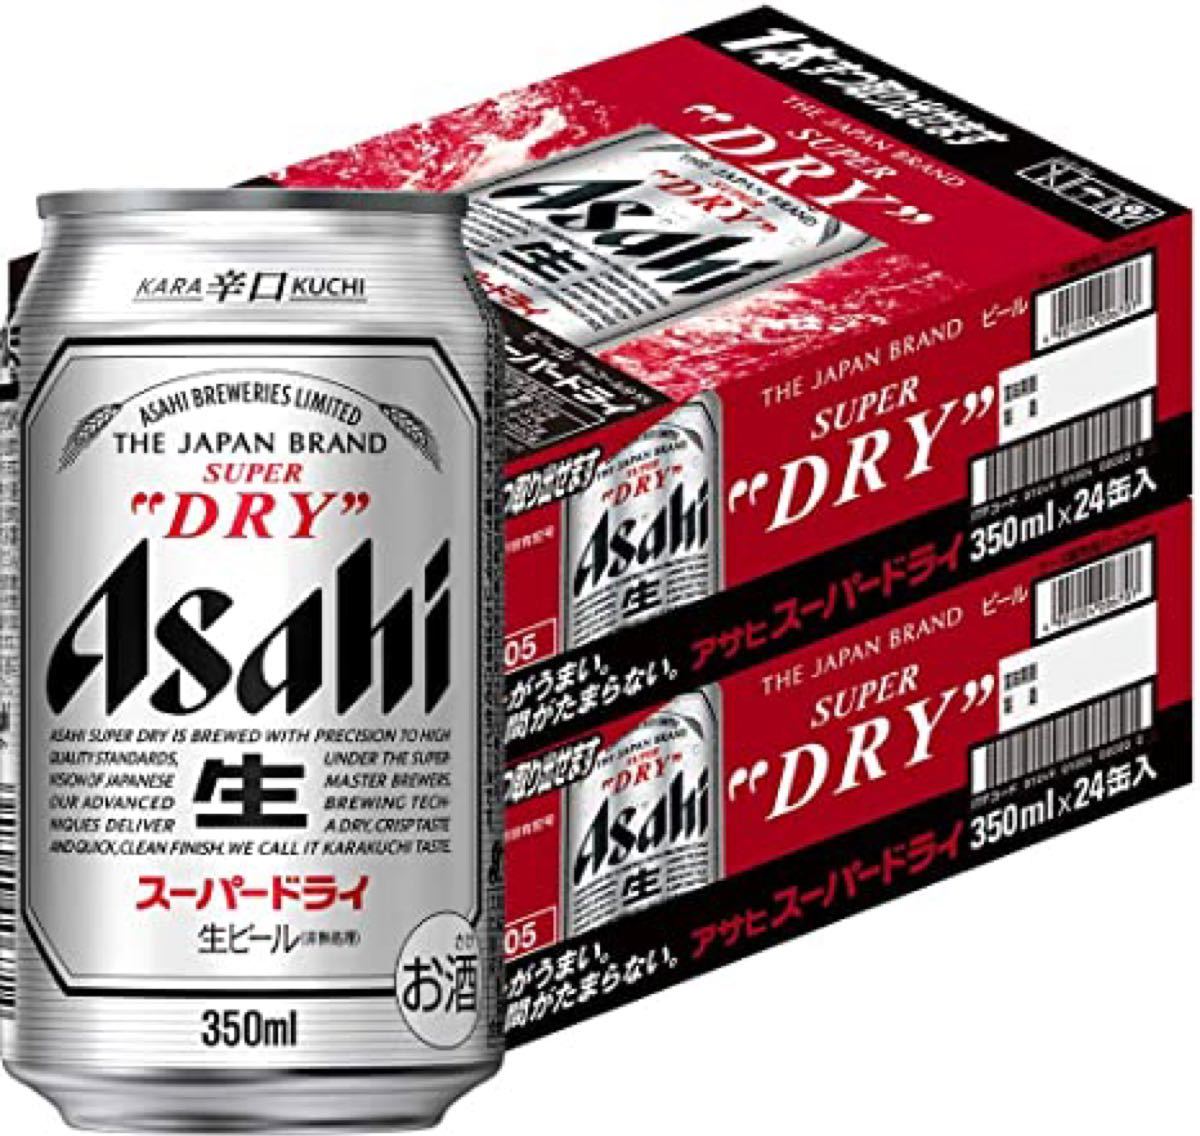 アサヒ スーパードライ 350ml 24缶 2箱 - www.decentstone.com